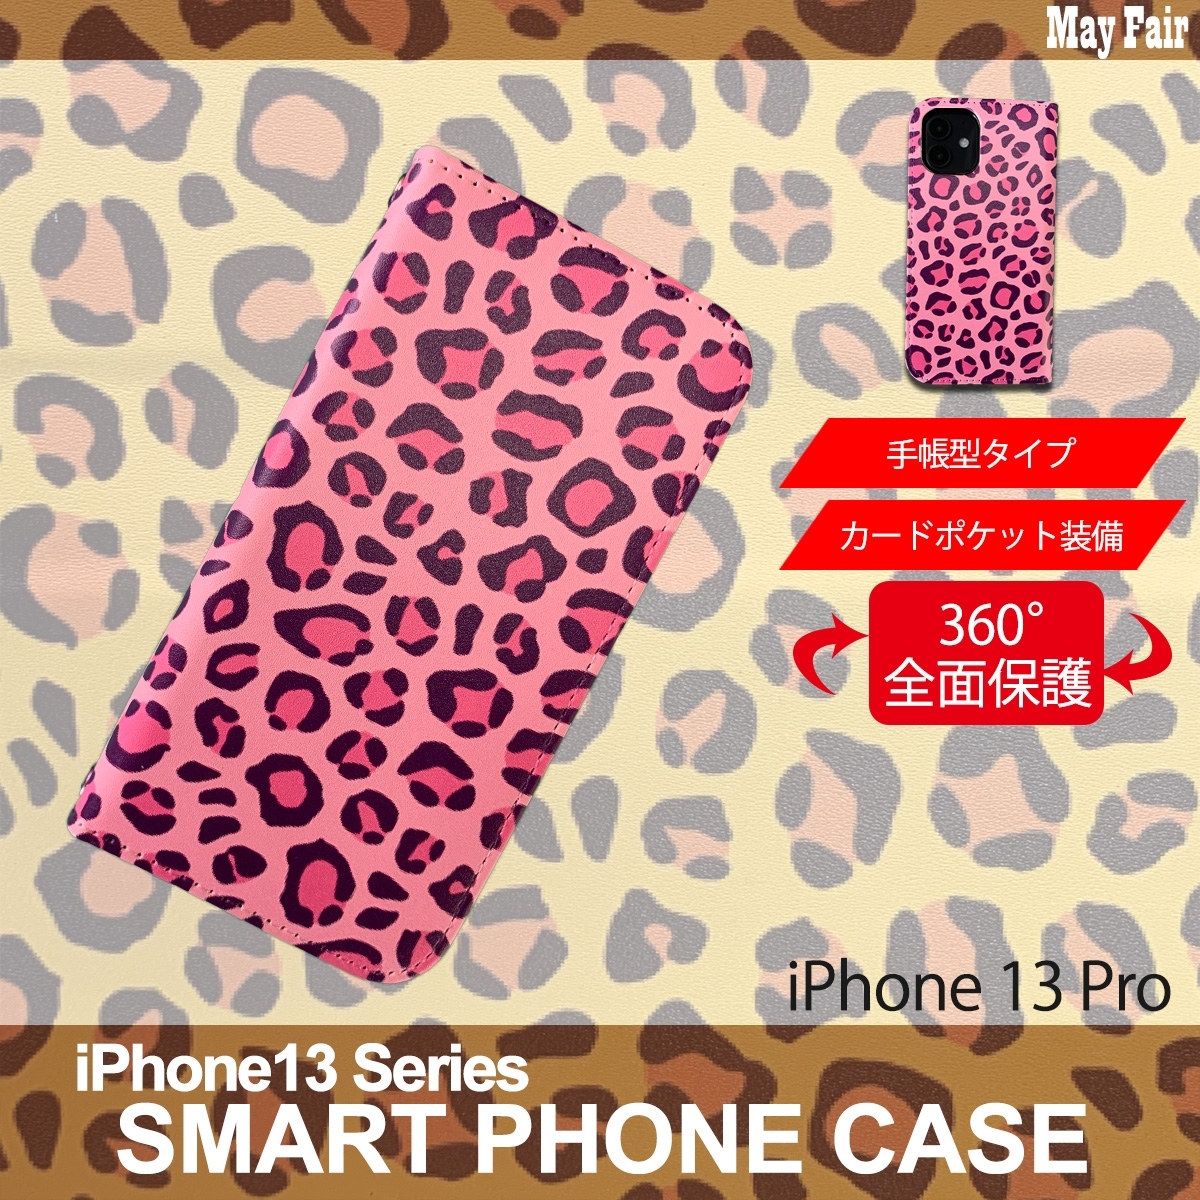 1】 iPhone13 Pro 手帳型 アイフォン ケース スマホカバー PVC レザー アニマル柄 ヒョウ柄 ピンク